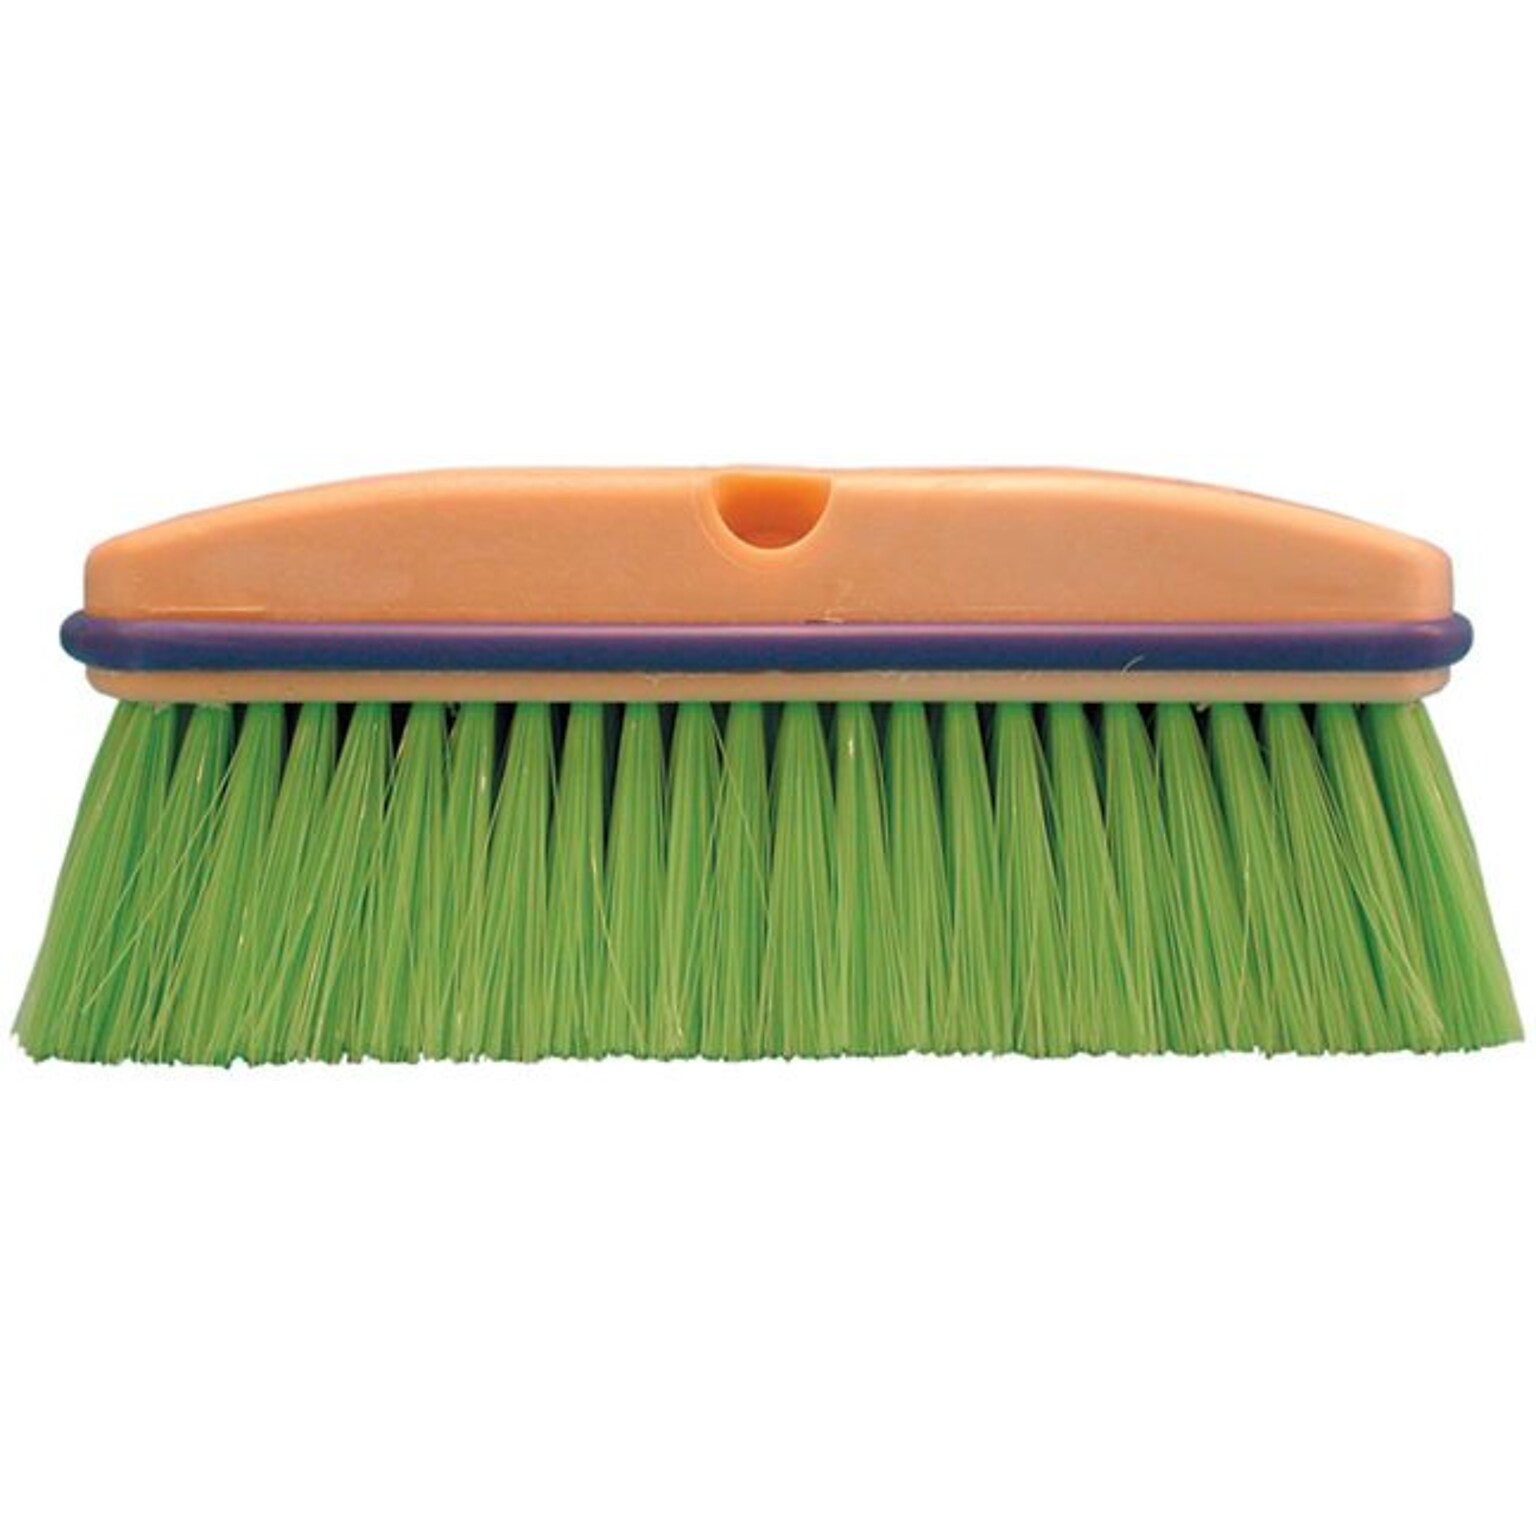 Magnolia Brush 455-3033 10 Nylon Bristle Vehicle Wash Brush; Flagged Green